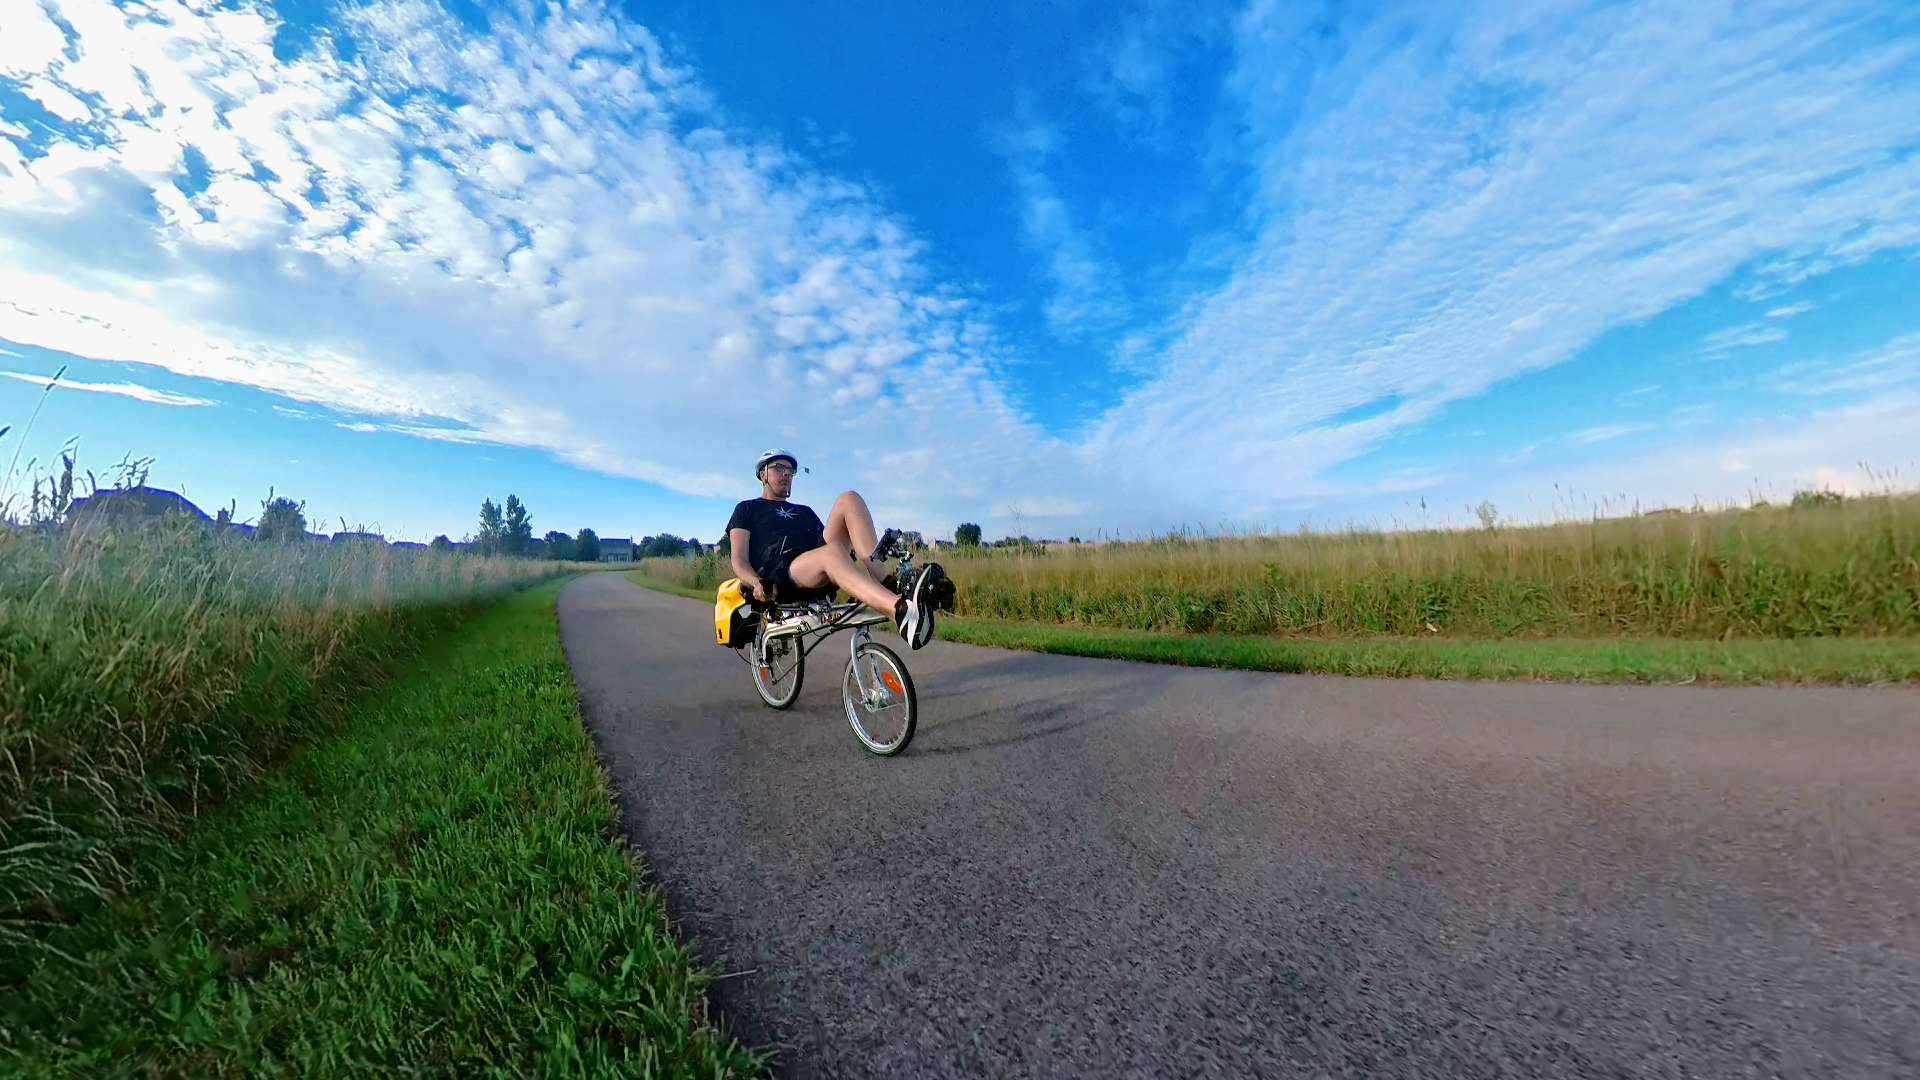 Linear SWB Recumbent riding at Peck Farm Park, Geneva, IL